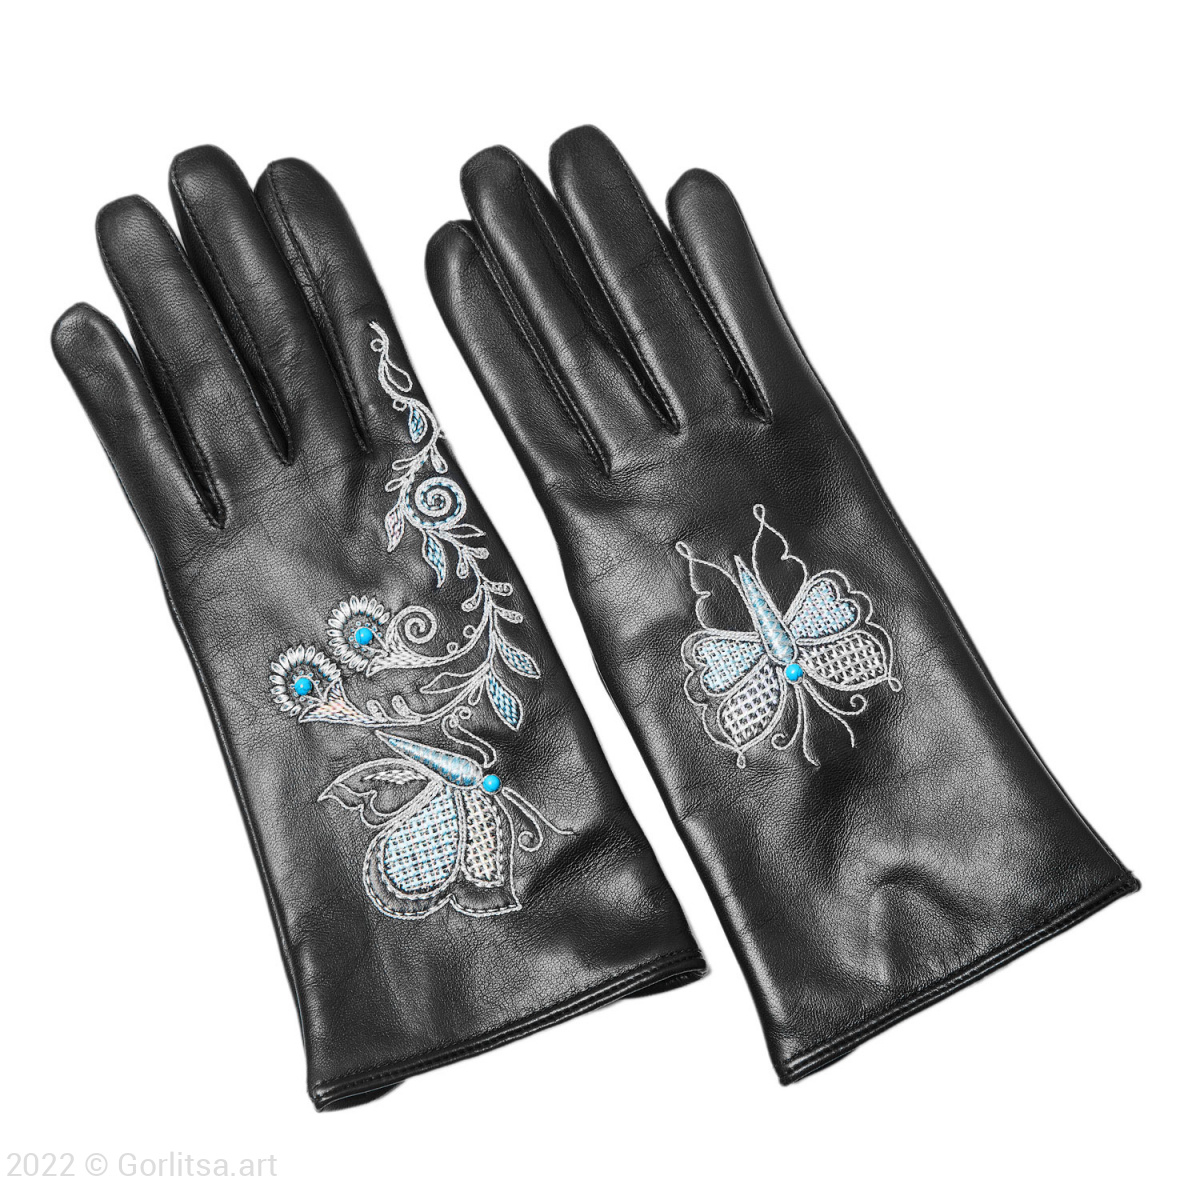 Перчатки женские «Бабочка»,112/154, цвет: чёрный, /серебро, кожа нат. кожа Киселева Г.А.